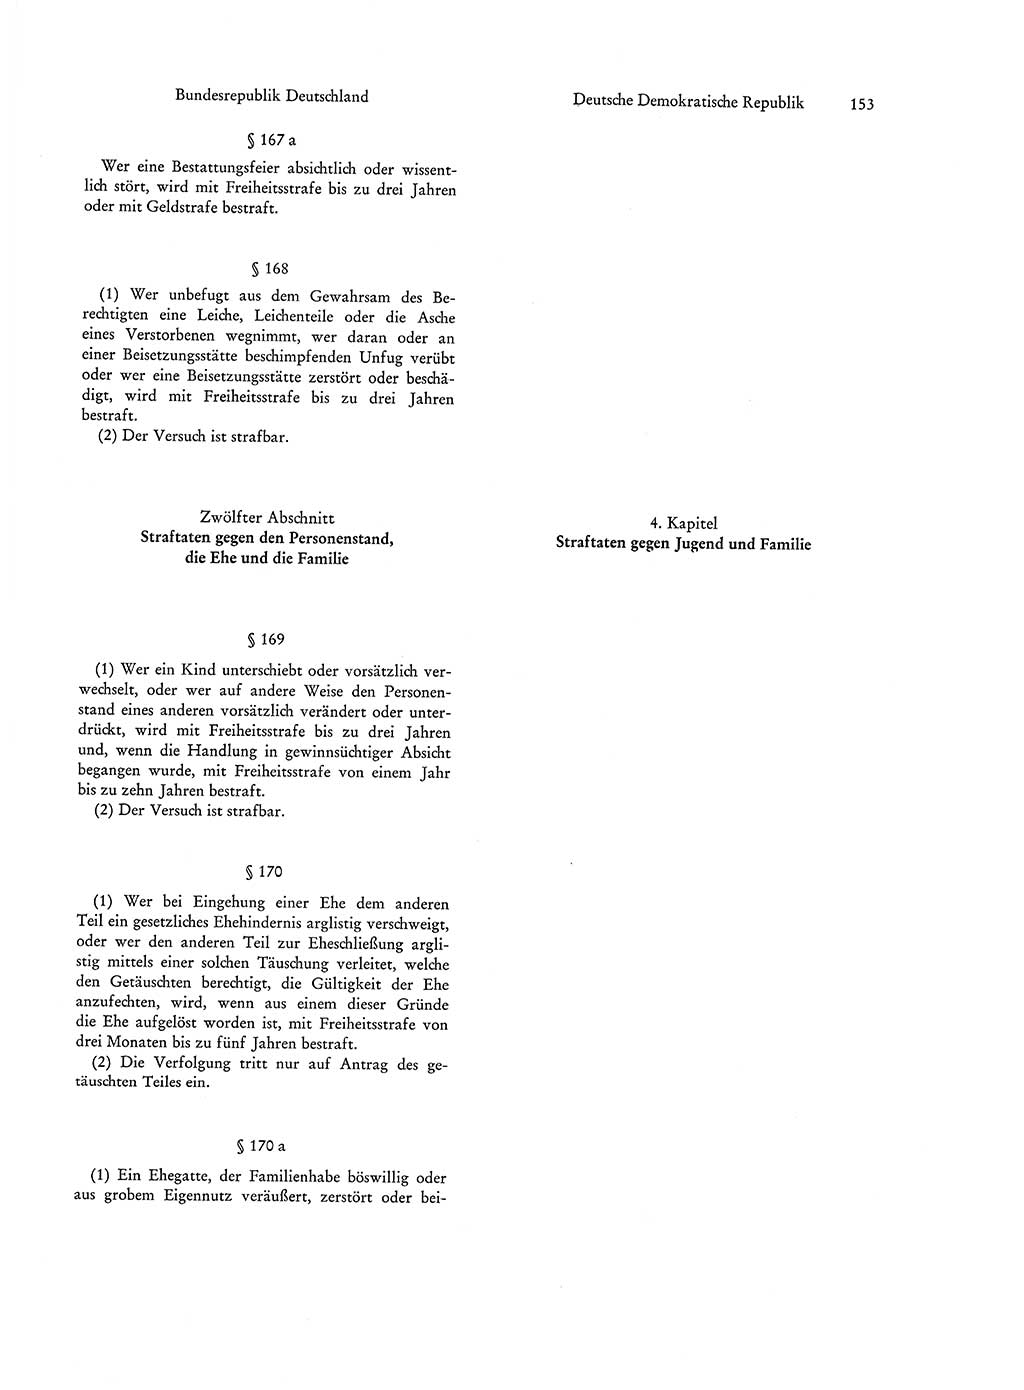 Strafgesetzgebung in Deutschland [Bundesrepublik Deutschland (BRD) und Deutsche Demokratische Republik (DDR)] 1972, Seite 153 (Str.-Ges. Dtl. StGB BRD DDR 1972, S. 153)